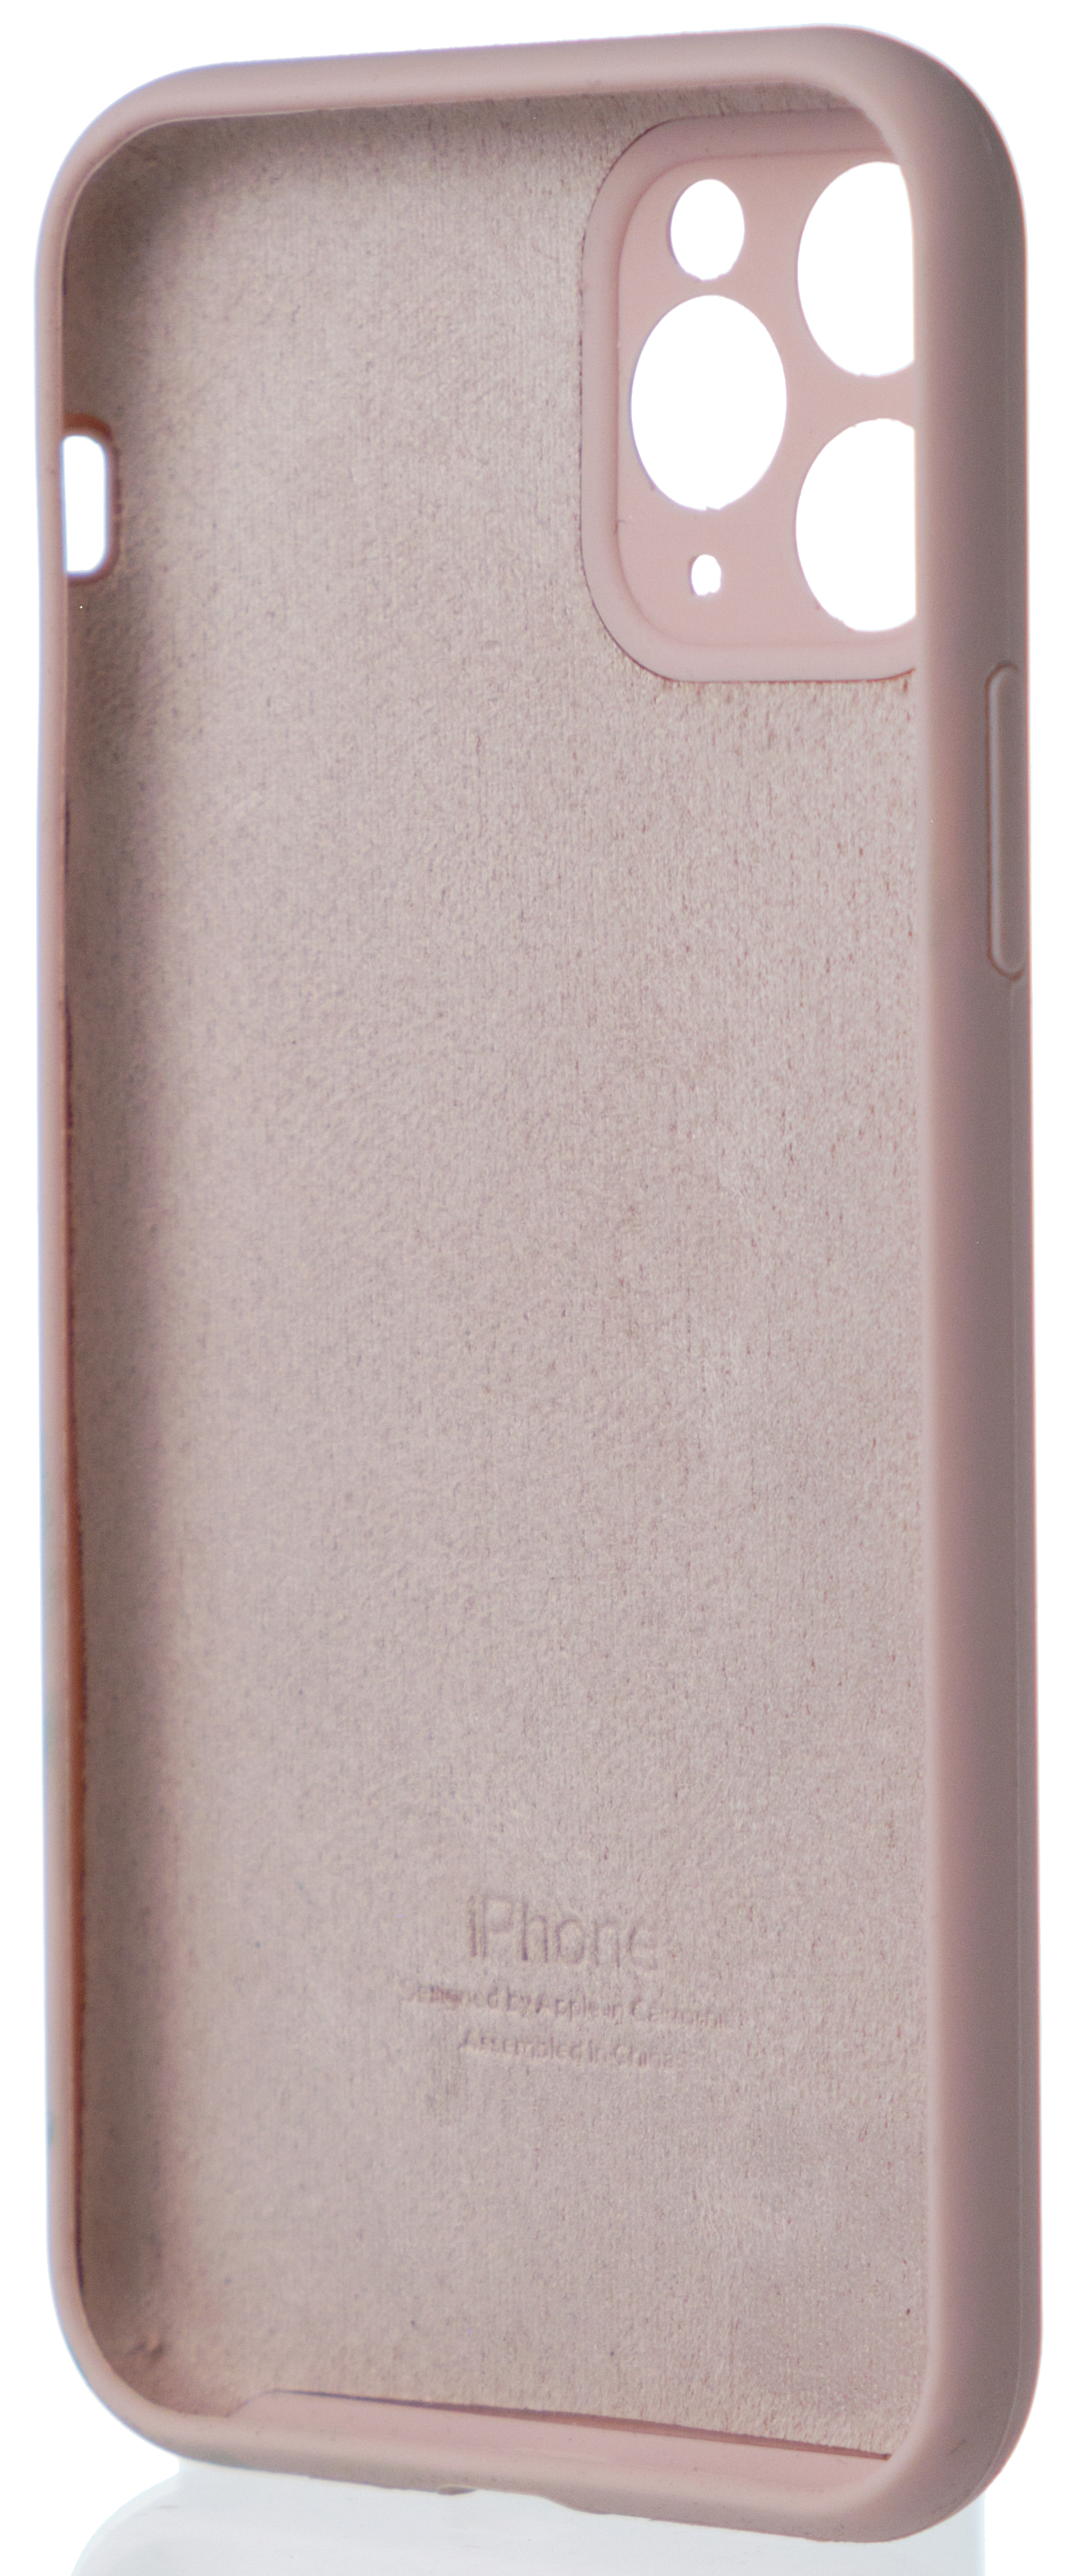 Чехол Silicone Case полная защита для iPhone 11 Pro розовый